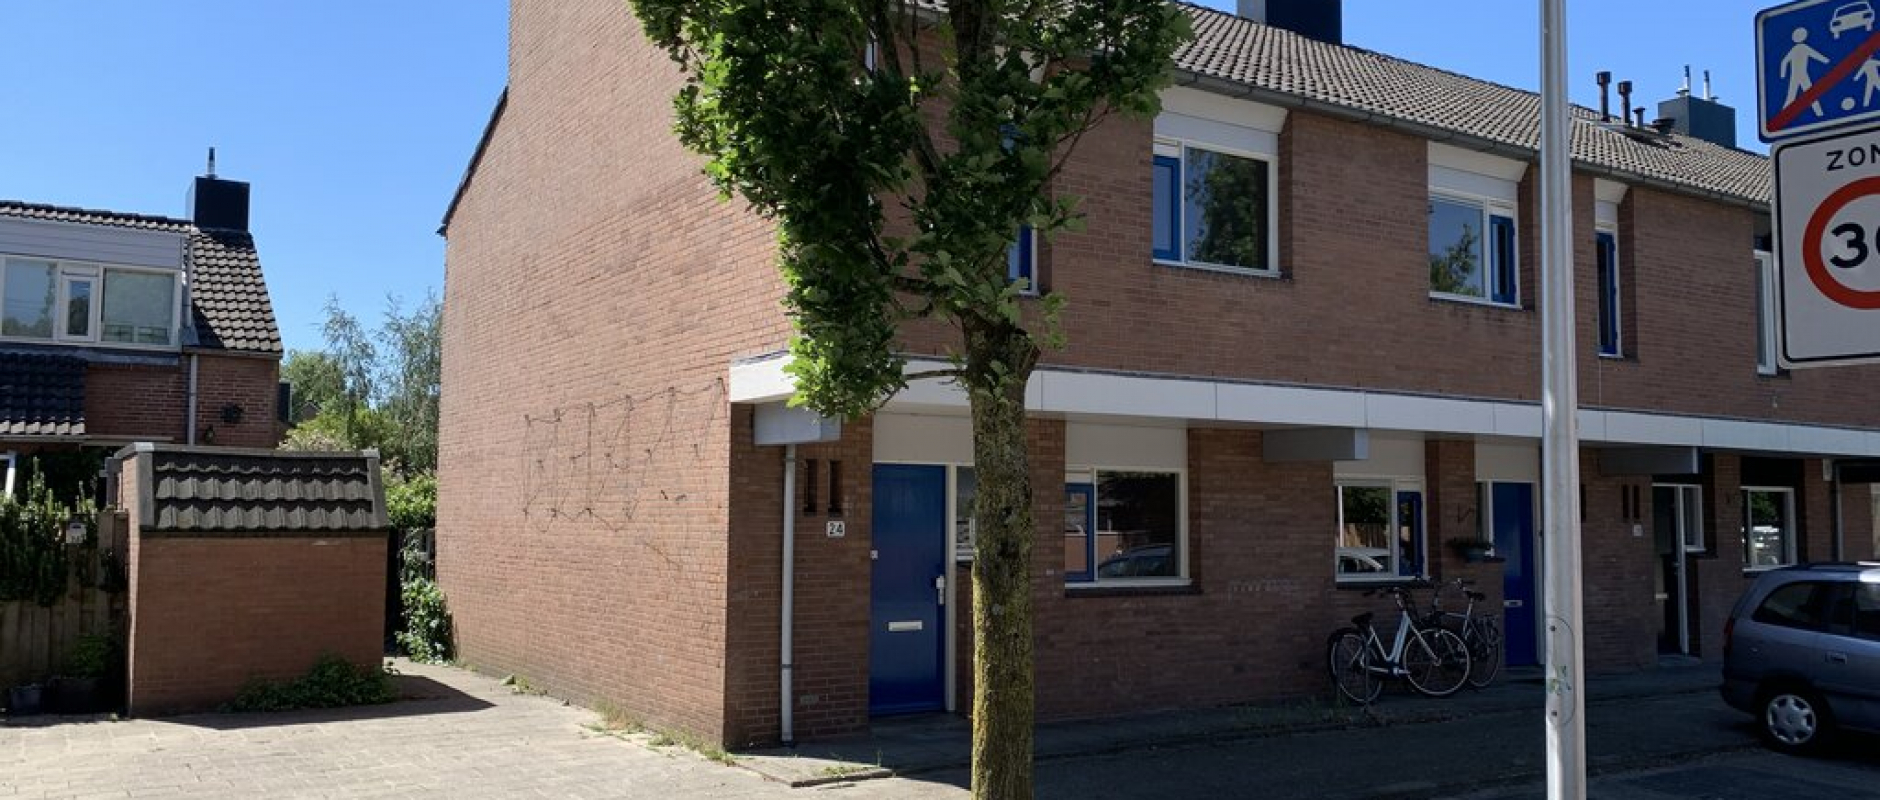 Woning te koop aan de Roelingsbeek 24 te Zwolle